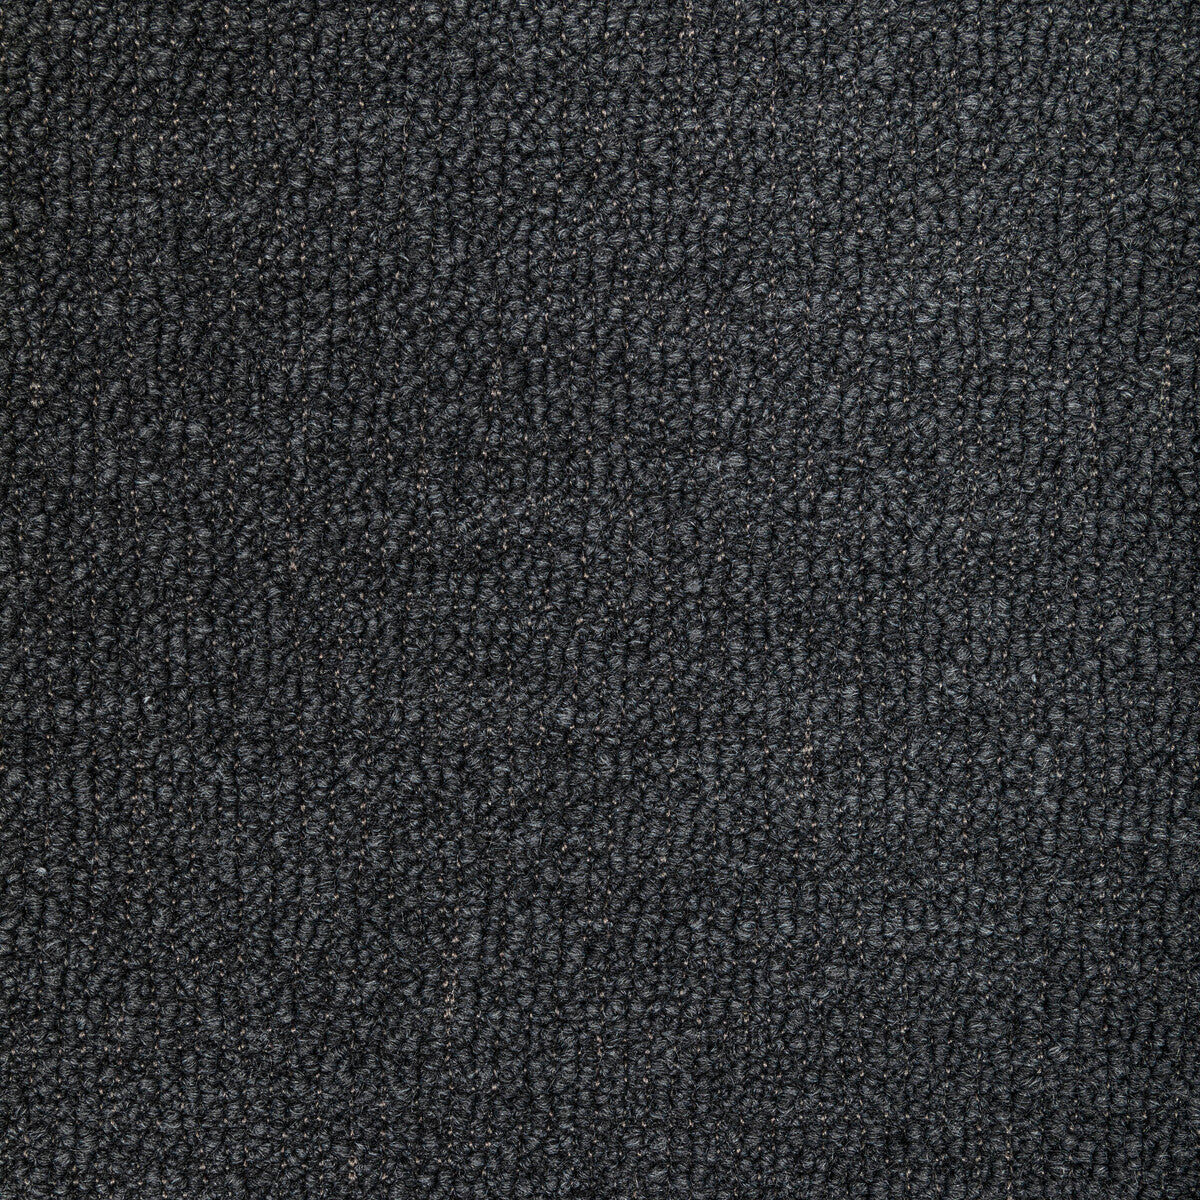 Kravet Design fabric in 36345-52 color - pattern 36345.52.0 - by Kravet Design